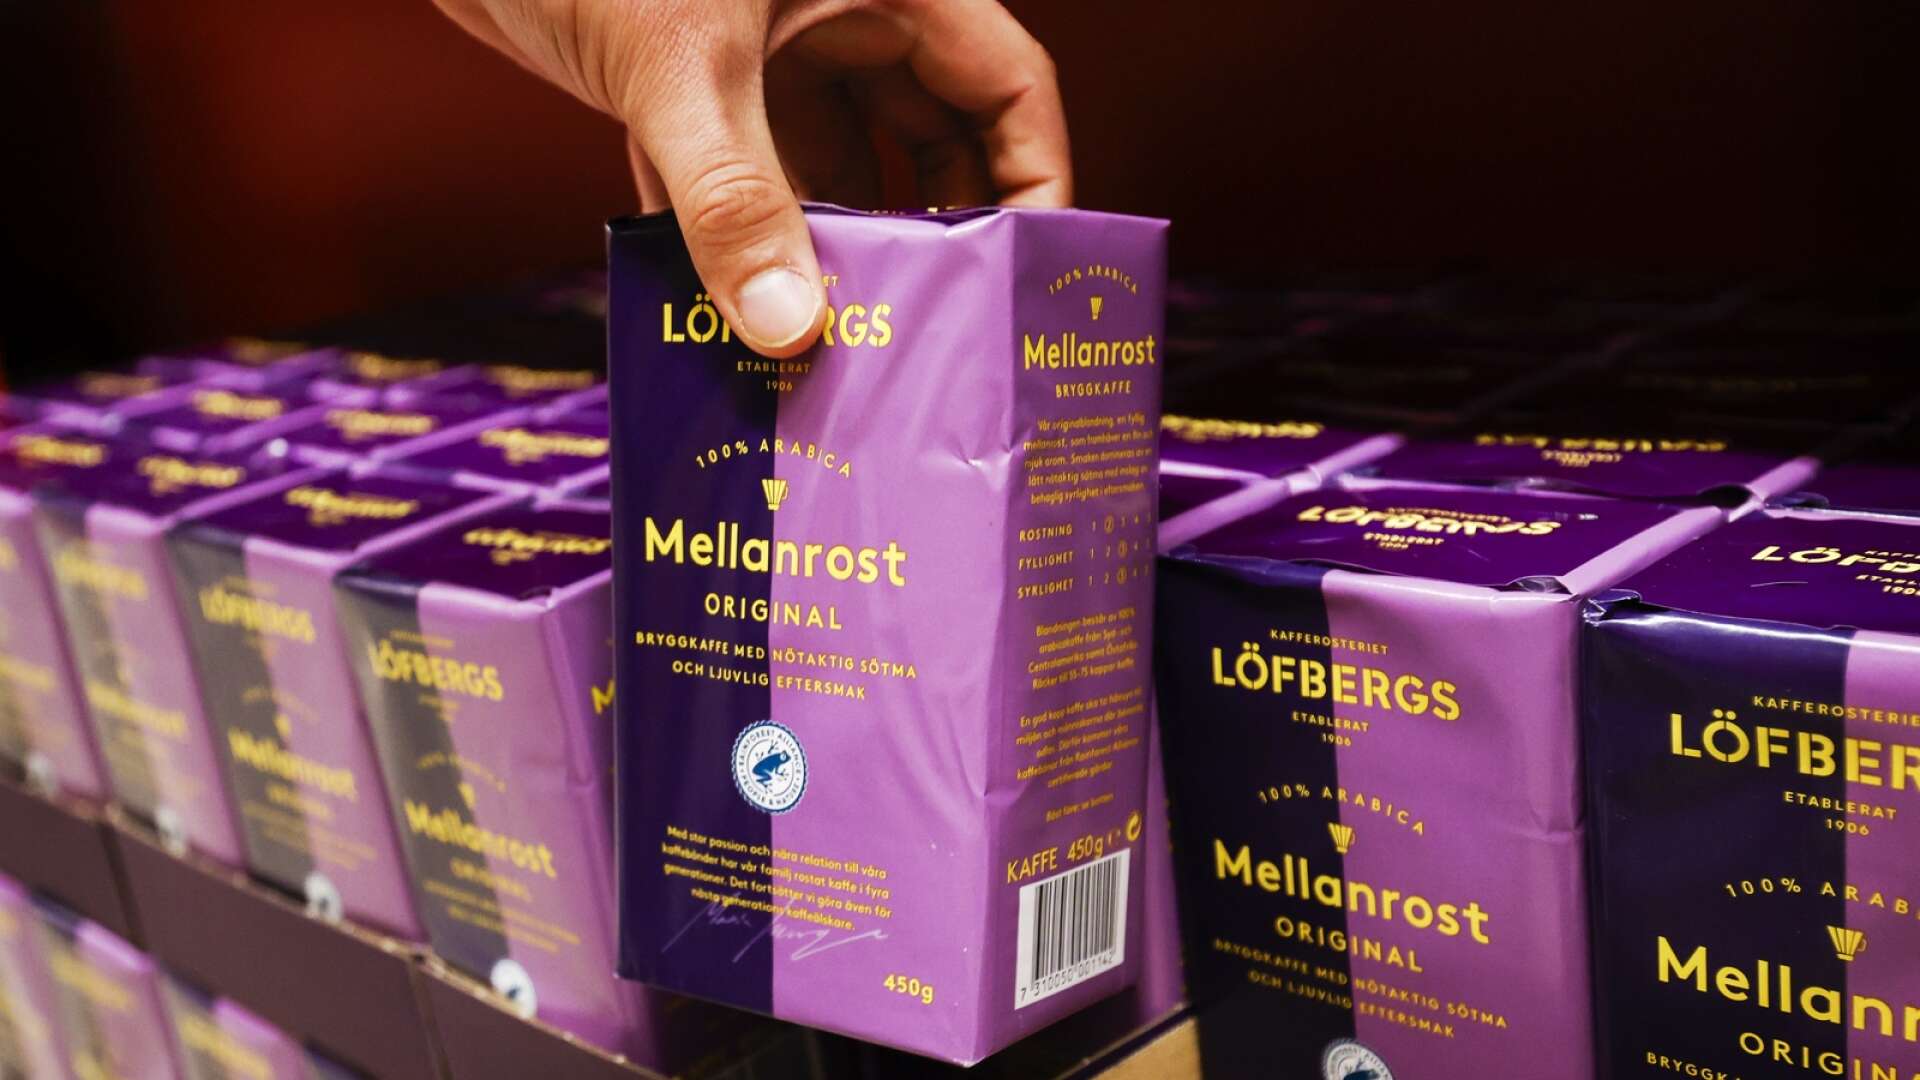 Löfbergs redovisar en uppgång med 38 procent på kaffeförsäljning det senaste året, vilket är en rekordtillväxt för Karlstadsföretaget.